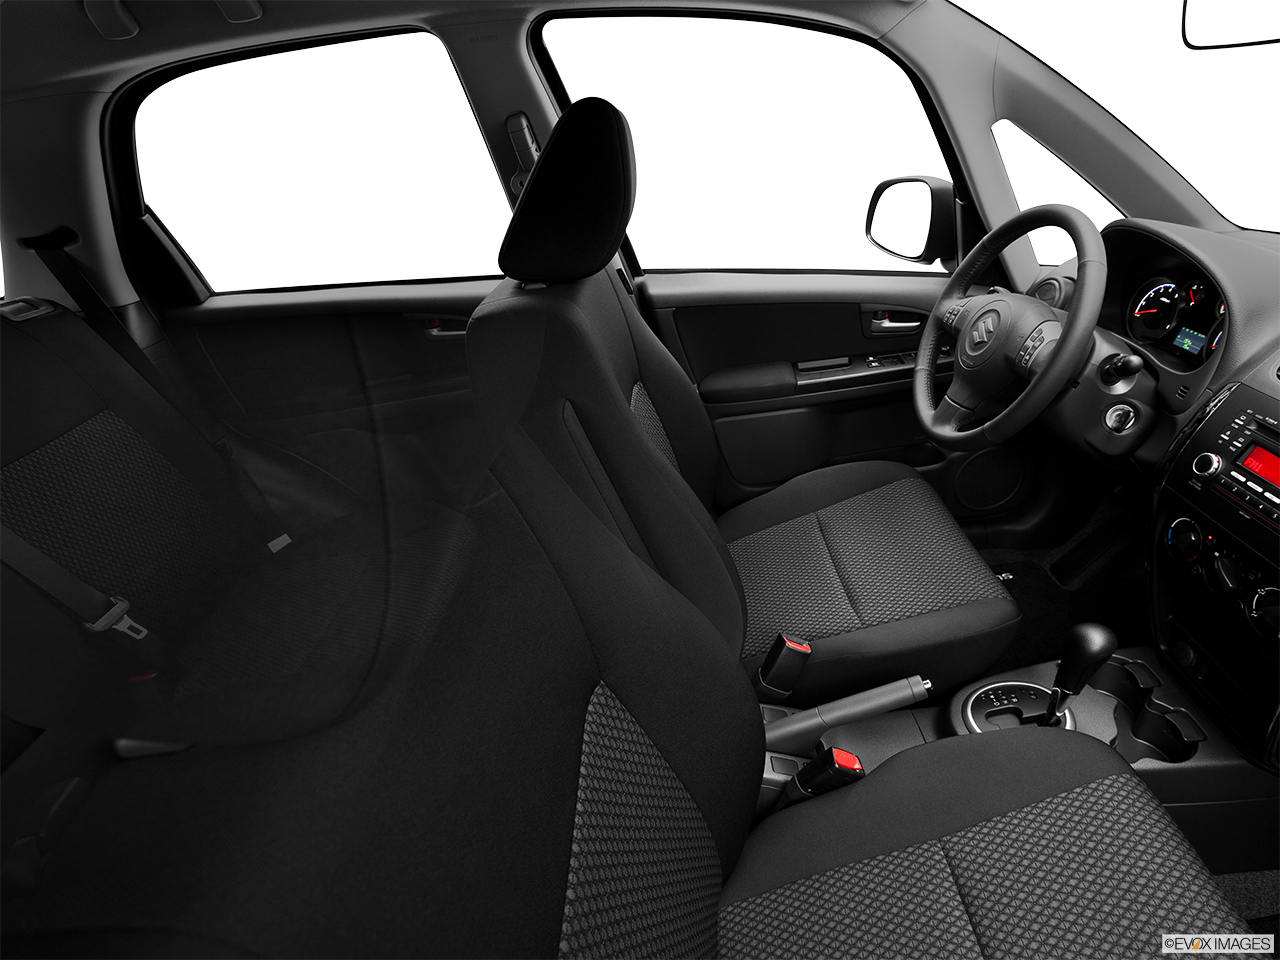 2013 Suzuki SX4 AWD Crossover Premium AT AWD Fake Buck Shot - Interior from Passenger B pillar. 